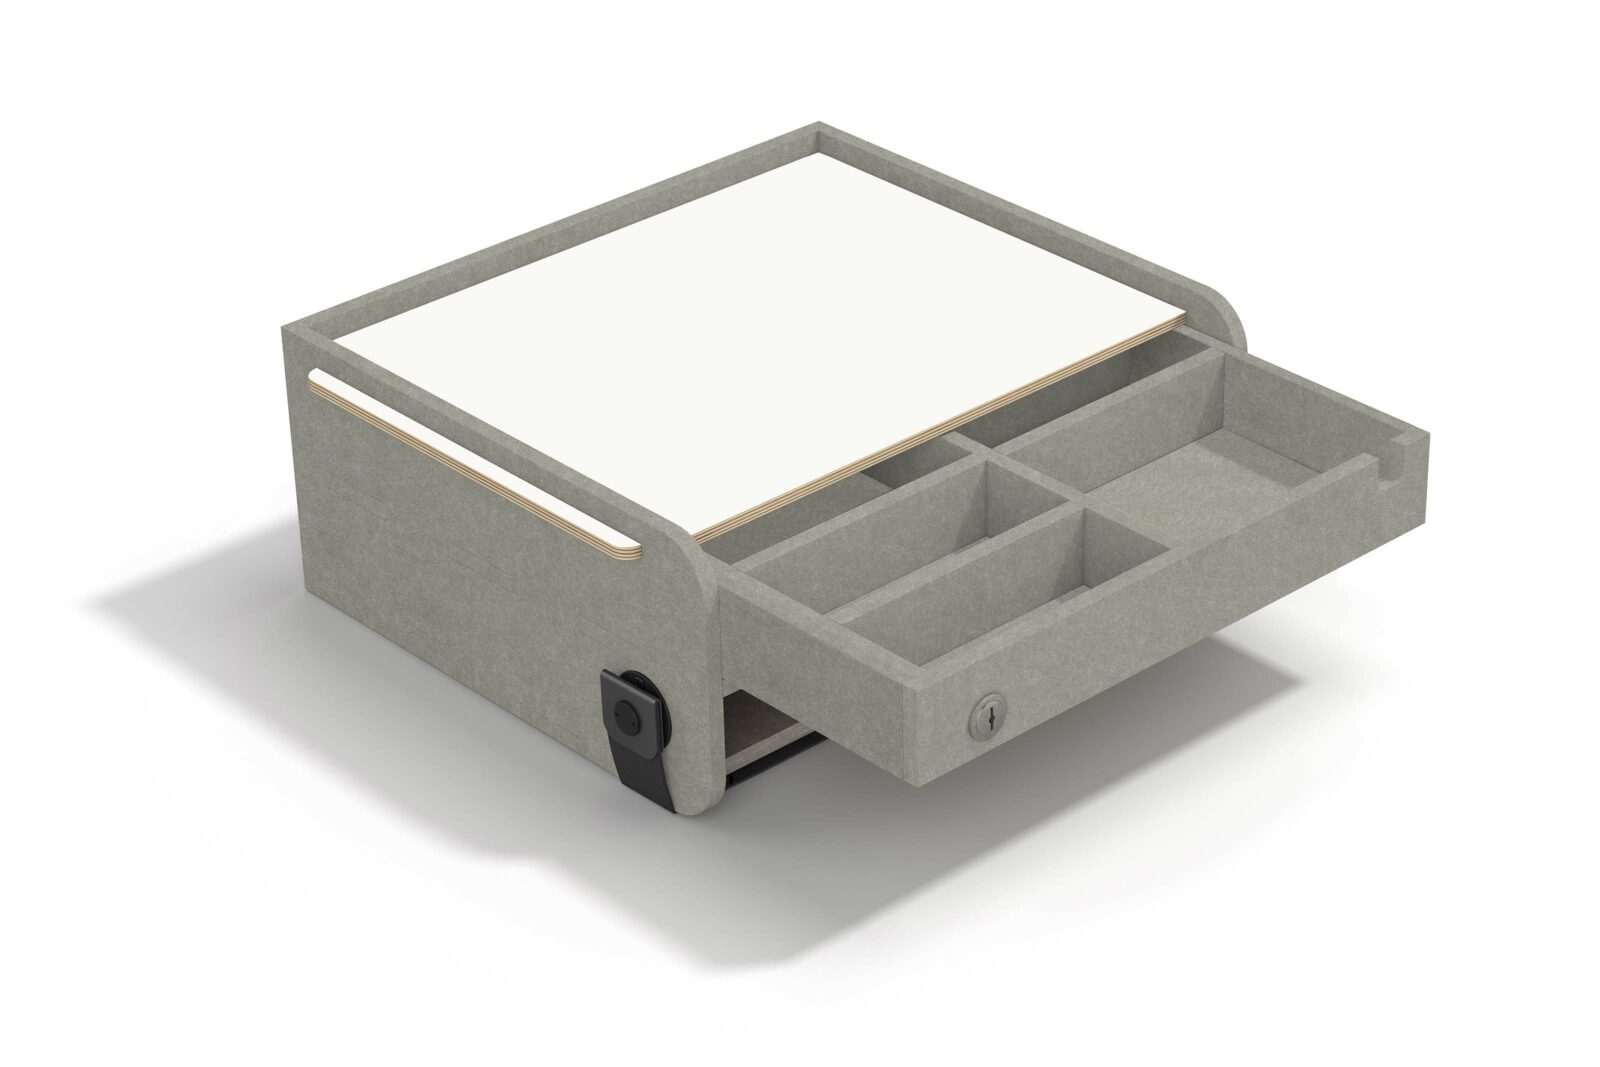 Neo Box als mobile Stauraumlösung mit geöffneter Schublade und Blick auf Einteilung für Kleinteile und Schloss zum Abschliessen